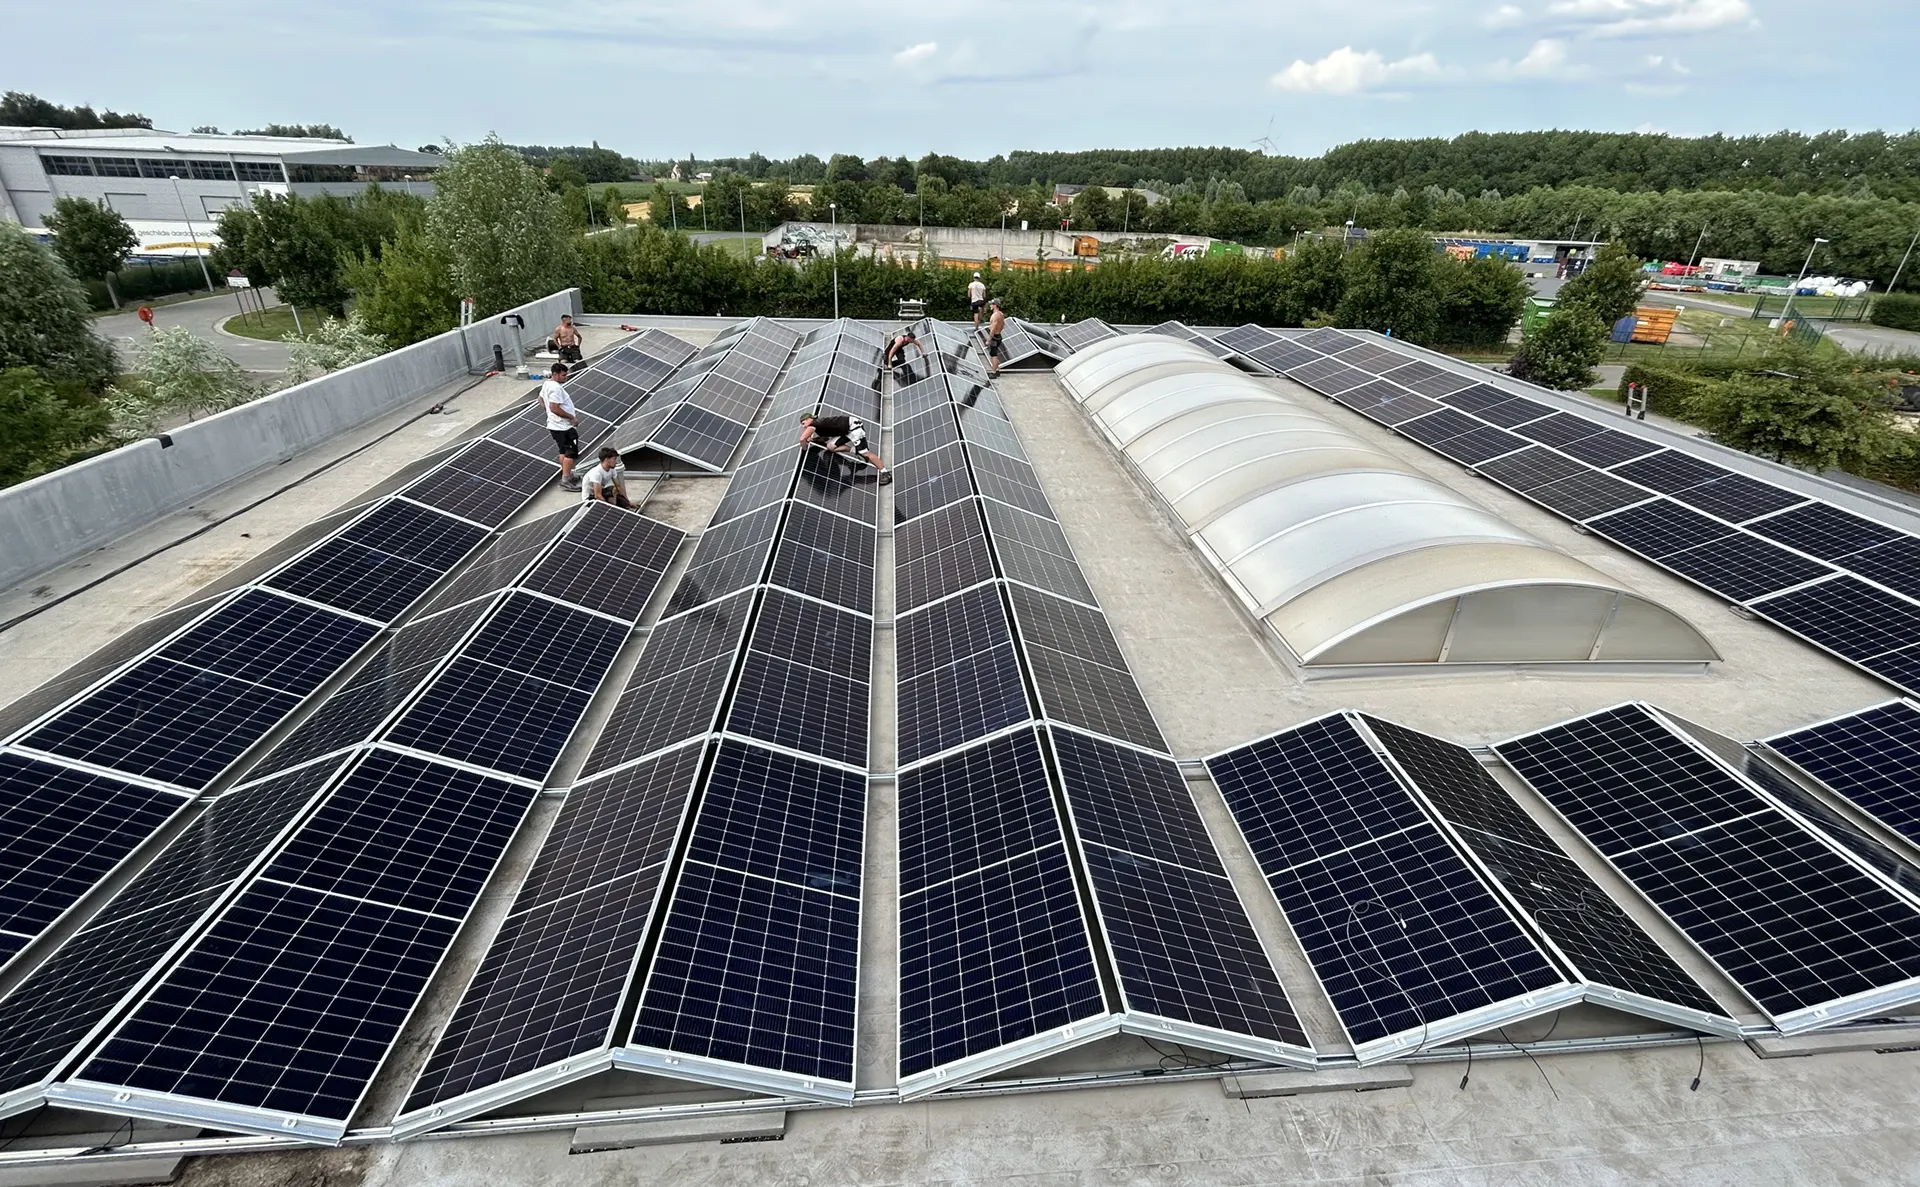 Propulsez votre industrie grâce à une énergie propre - Améliorez la durabilité de votre entreprise avec des panneaux solaires adaptés à vos besoins.